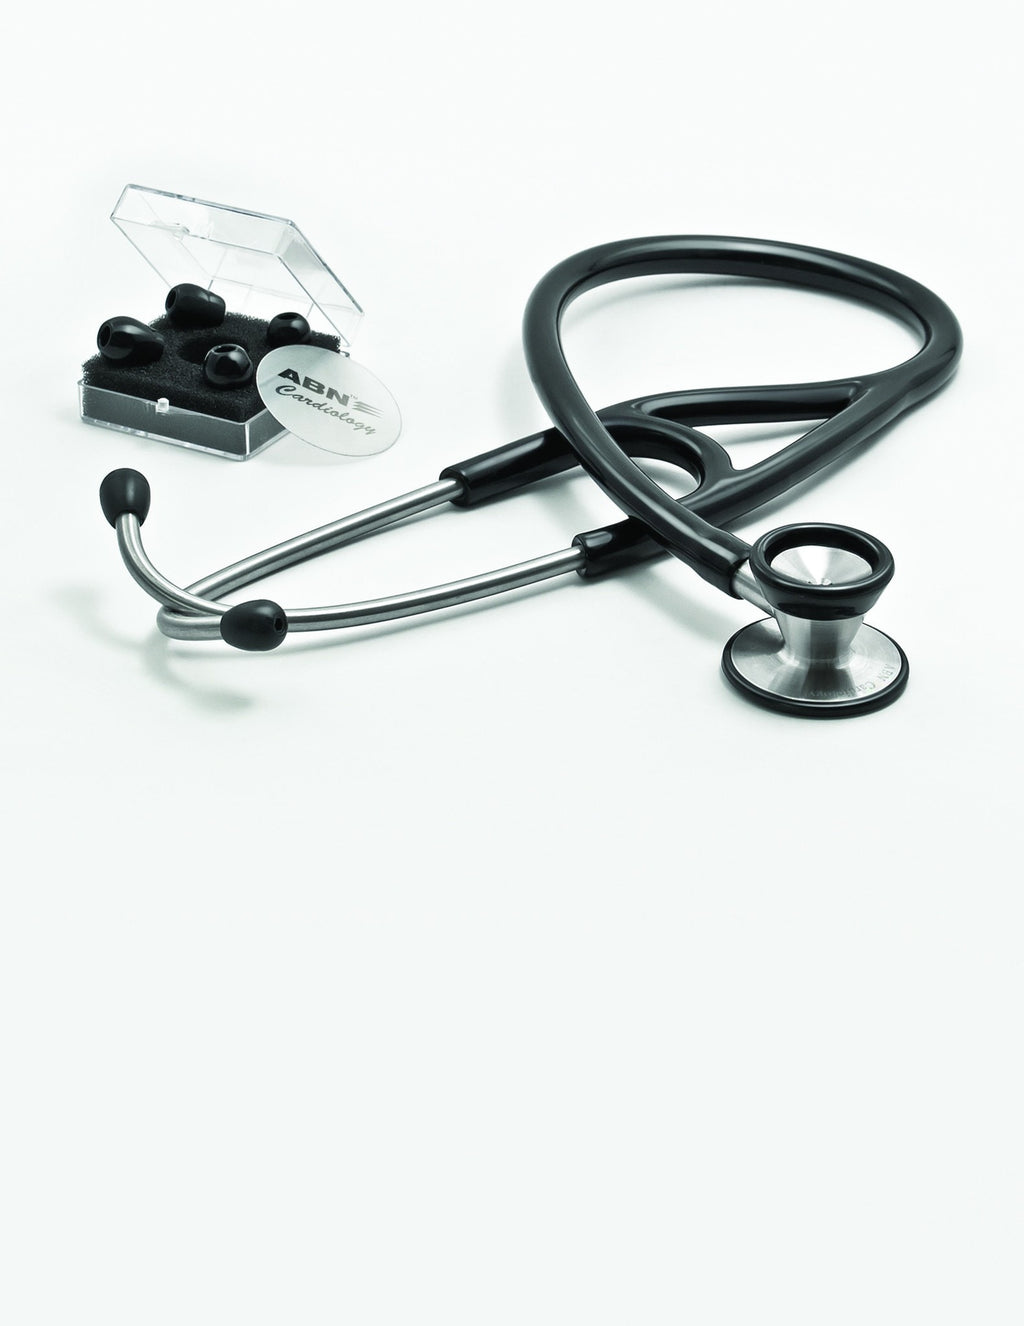 Cardiology Stethoscope-Bydand-InterAktiv Health